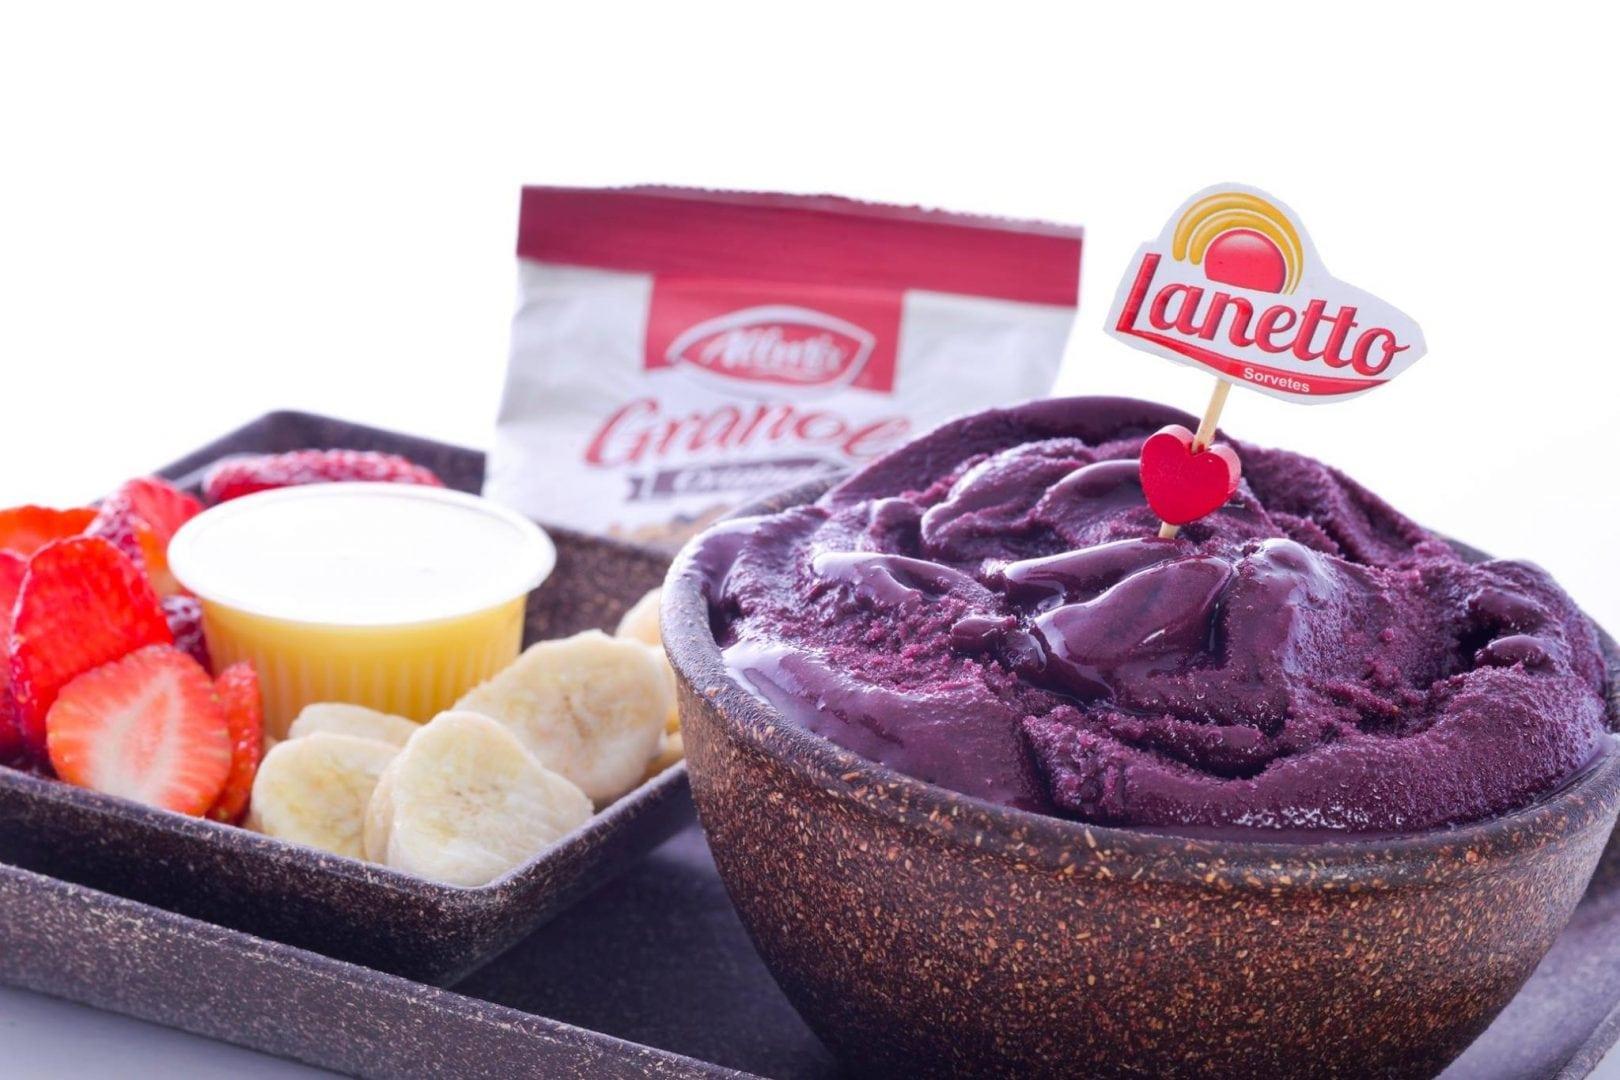 Conheça três sorveterias que servem sabores inusitados em Goiânia